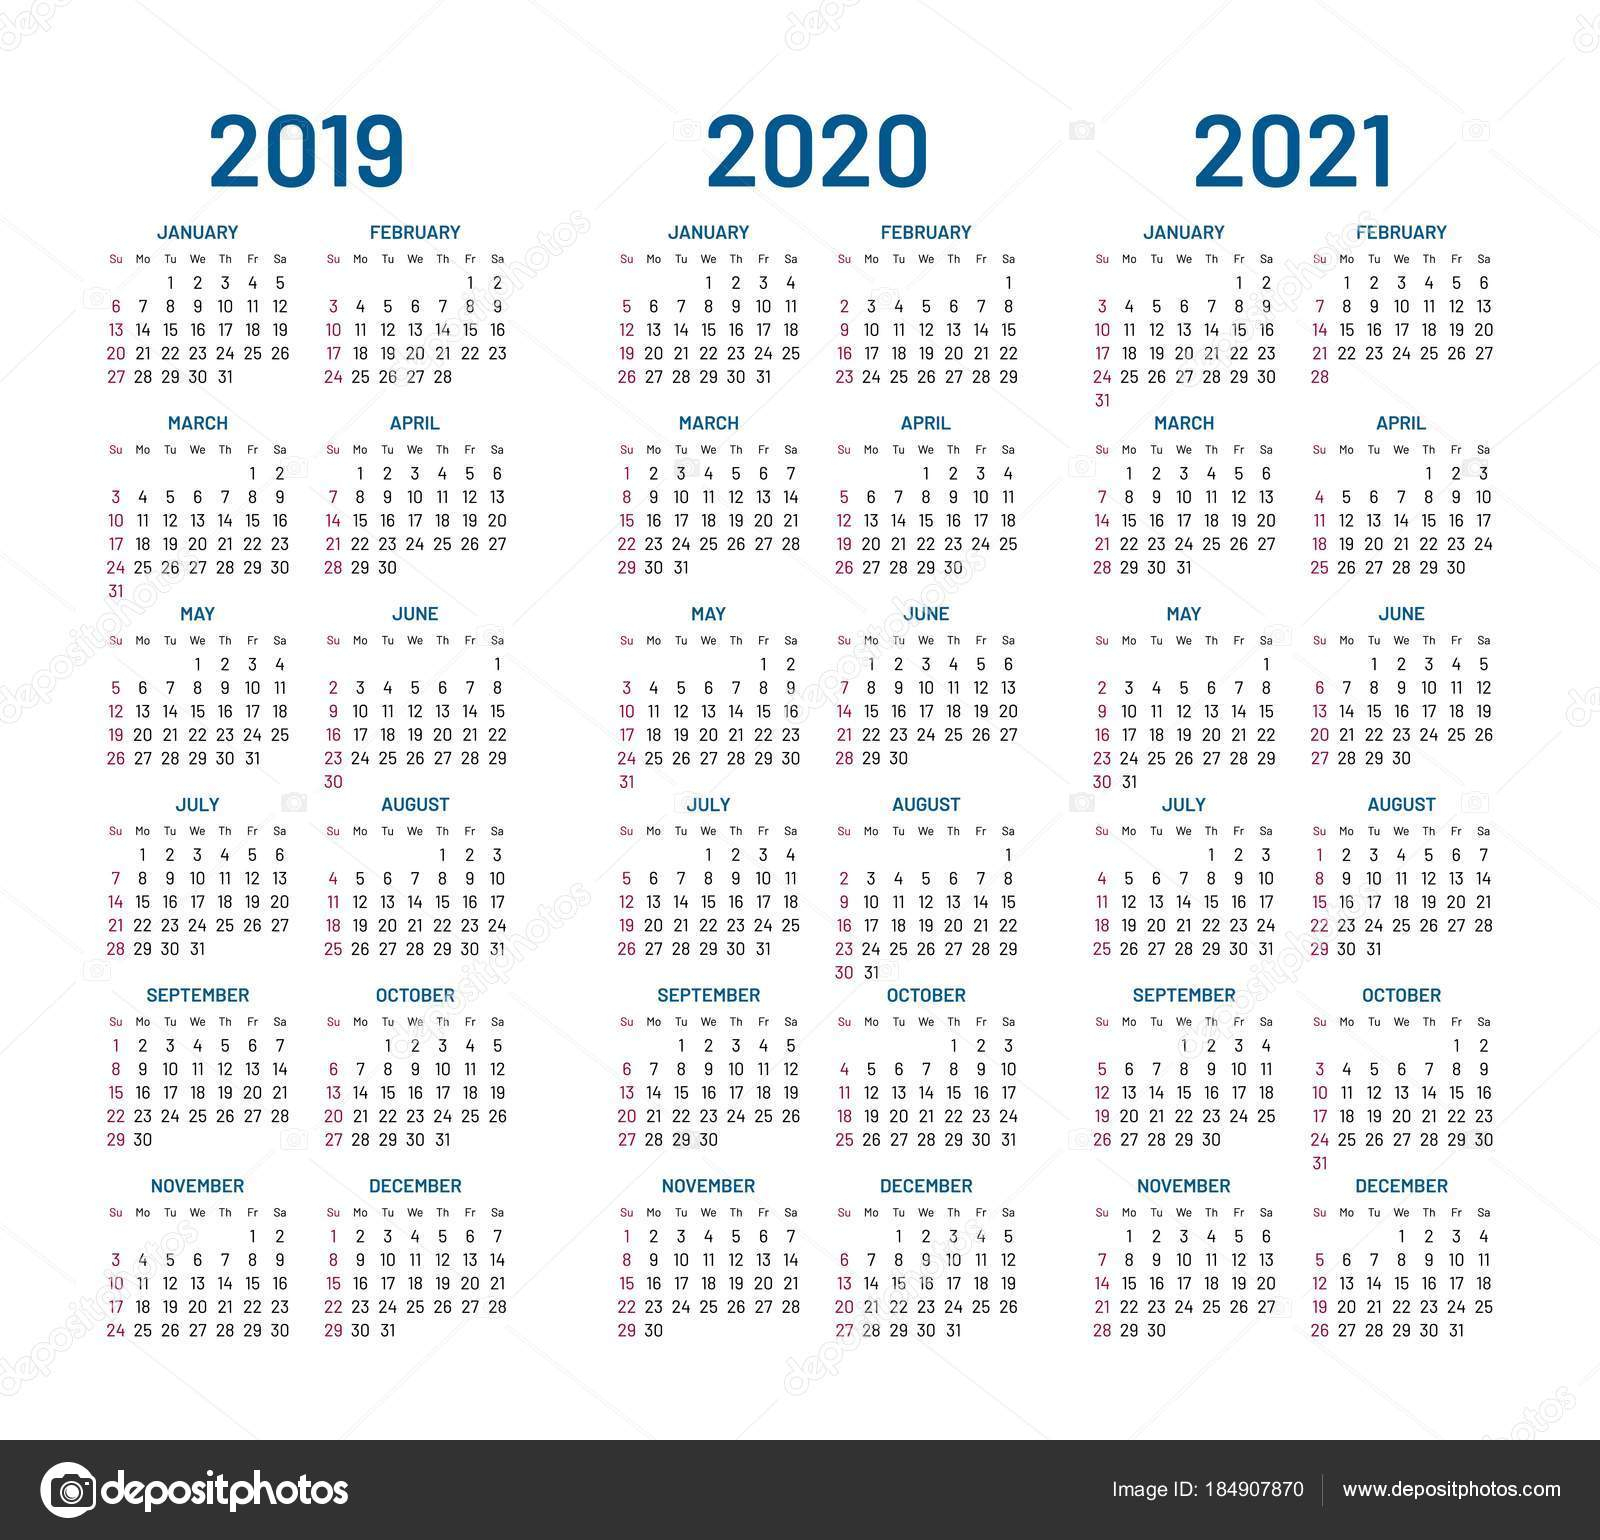 2019 2020 2021 Году Календарь Вектор — Векторное Изображение